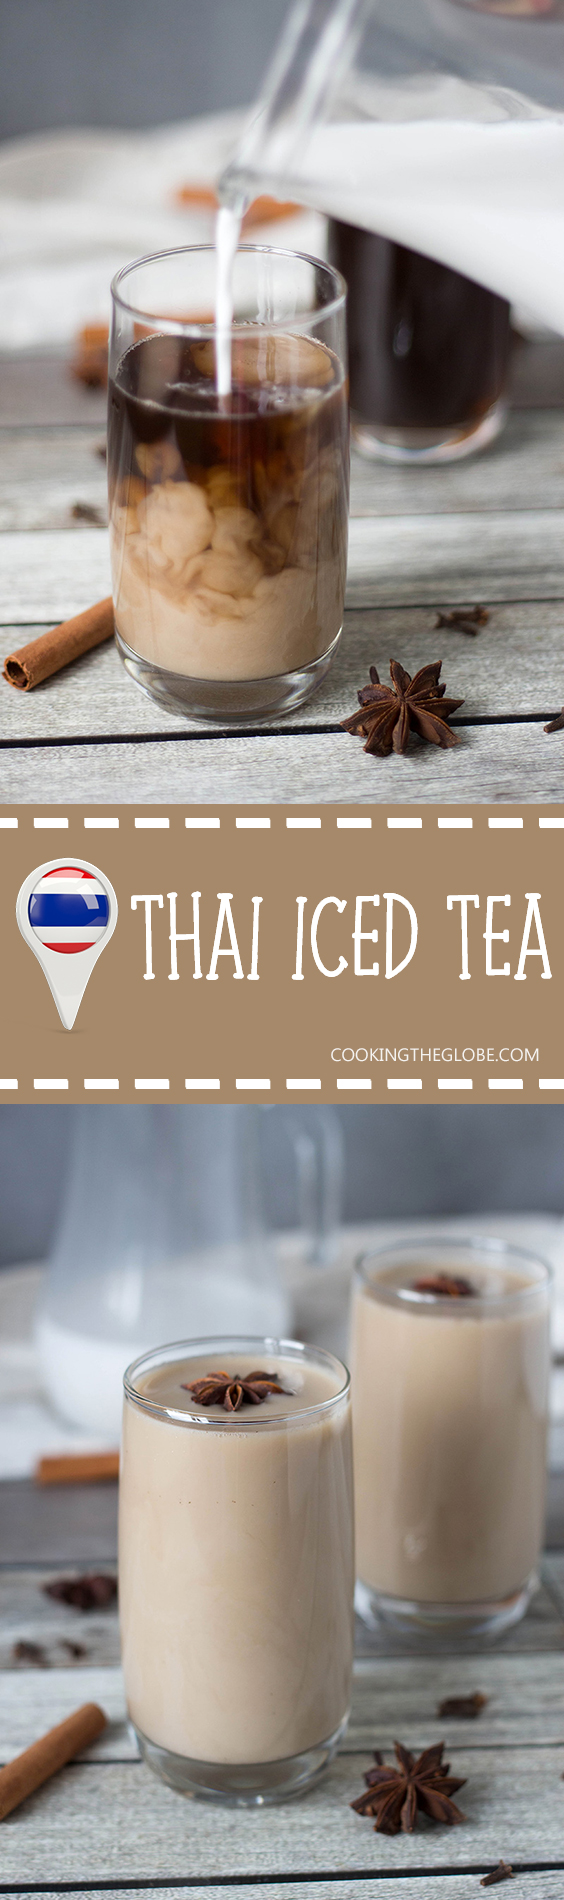 Si estás buscando algo refrescante y al mismo tiempo delicioso, este té helado tailandés es para ti. ¡Se condimenta con anís, canela, jengibre, clavos y más! | cocinartheglobe.com